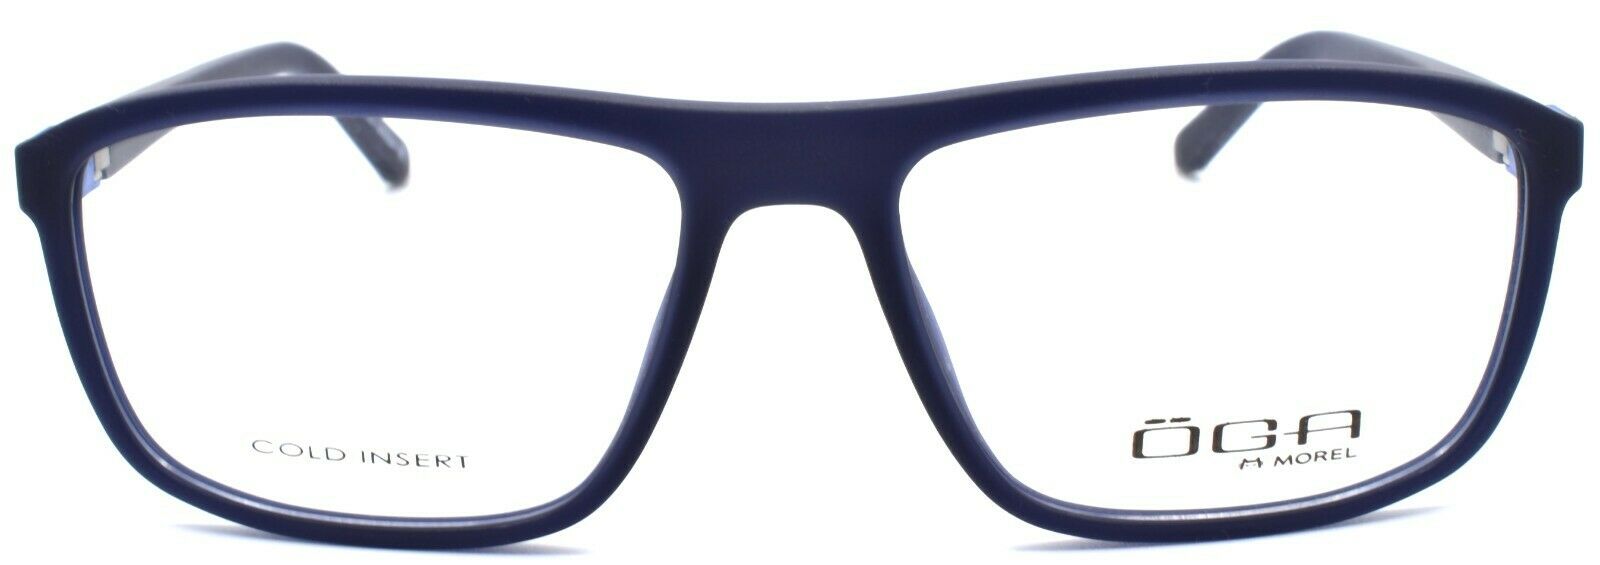 2-OGA by Morel 8203O BB012 Men's Eyeglasses Frames 55-16-140 Navy Blue-3604770897647-IKSpecs